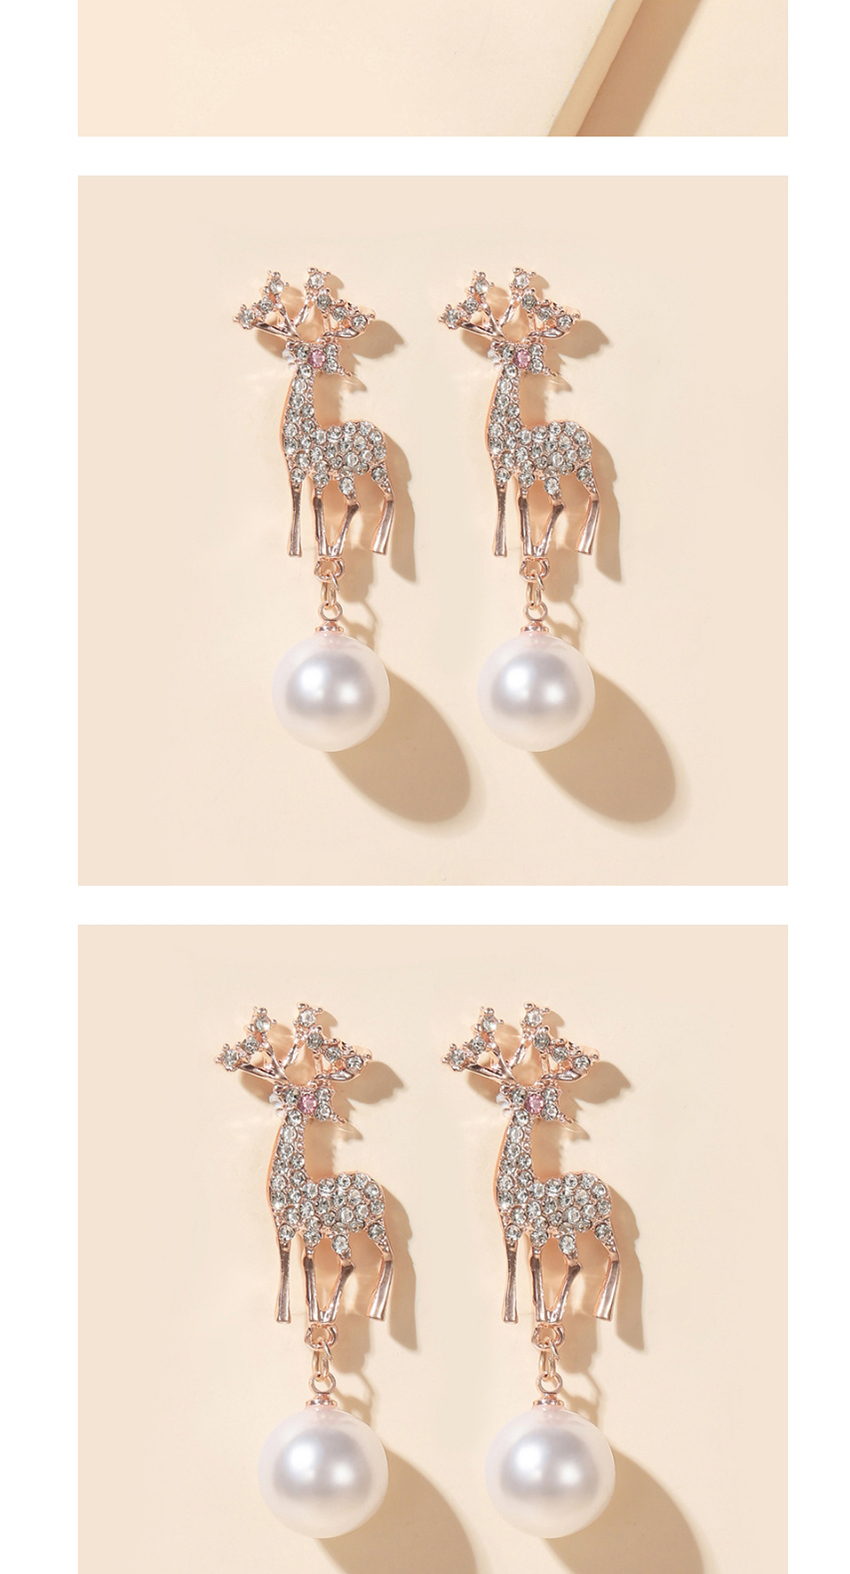 Fashion Pentagram Moon Asymmetrical Star Moon Elk Bow Pearl Earrings,Stud Earrings